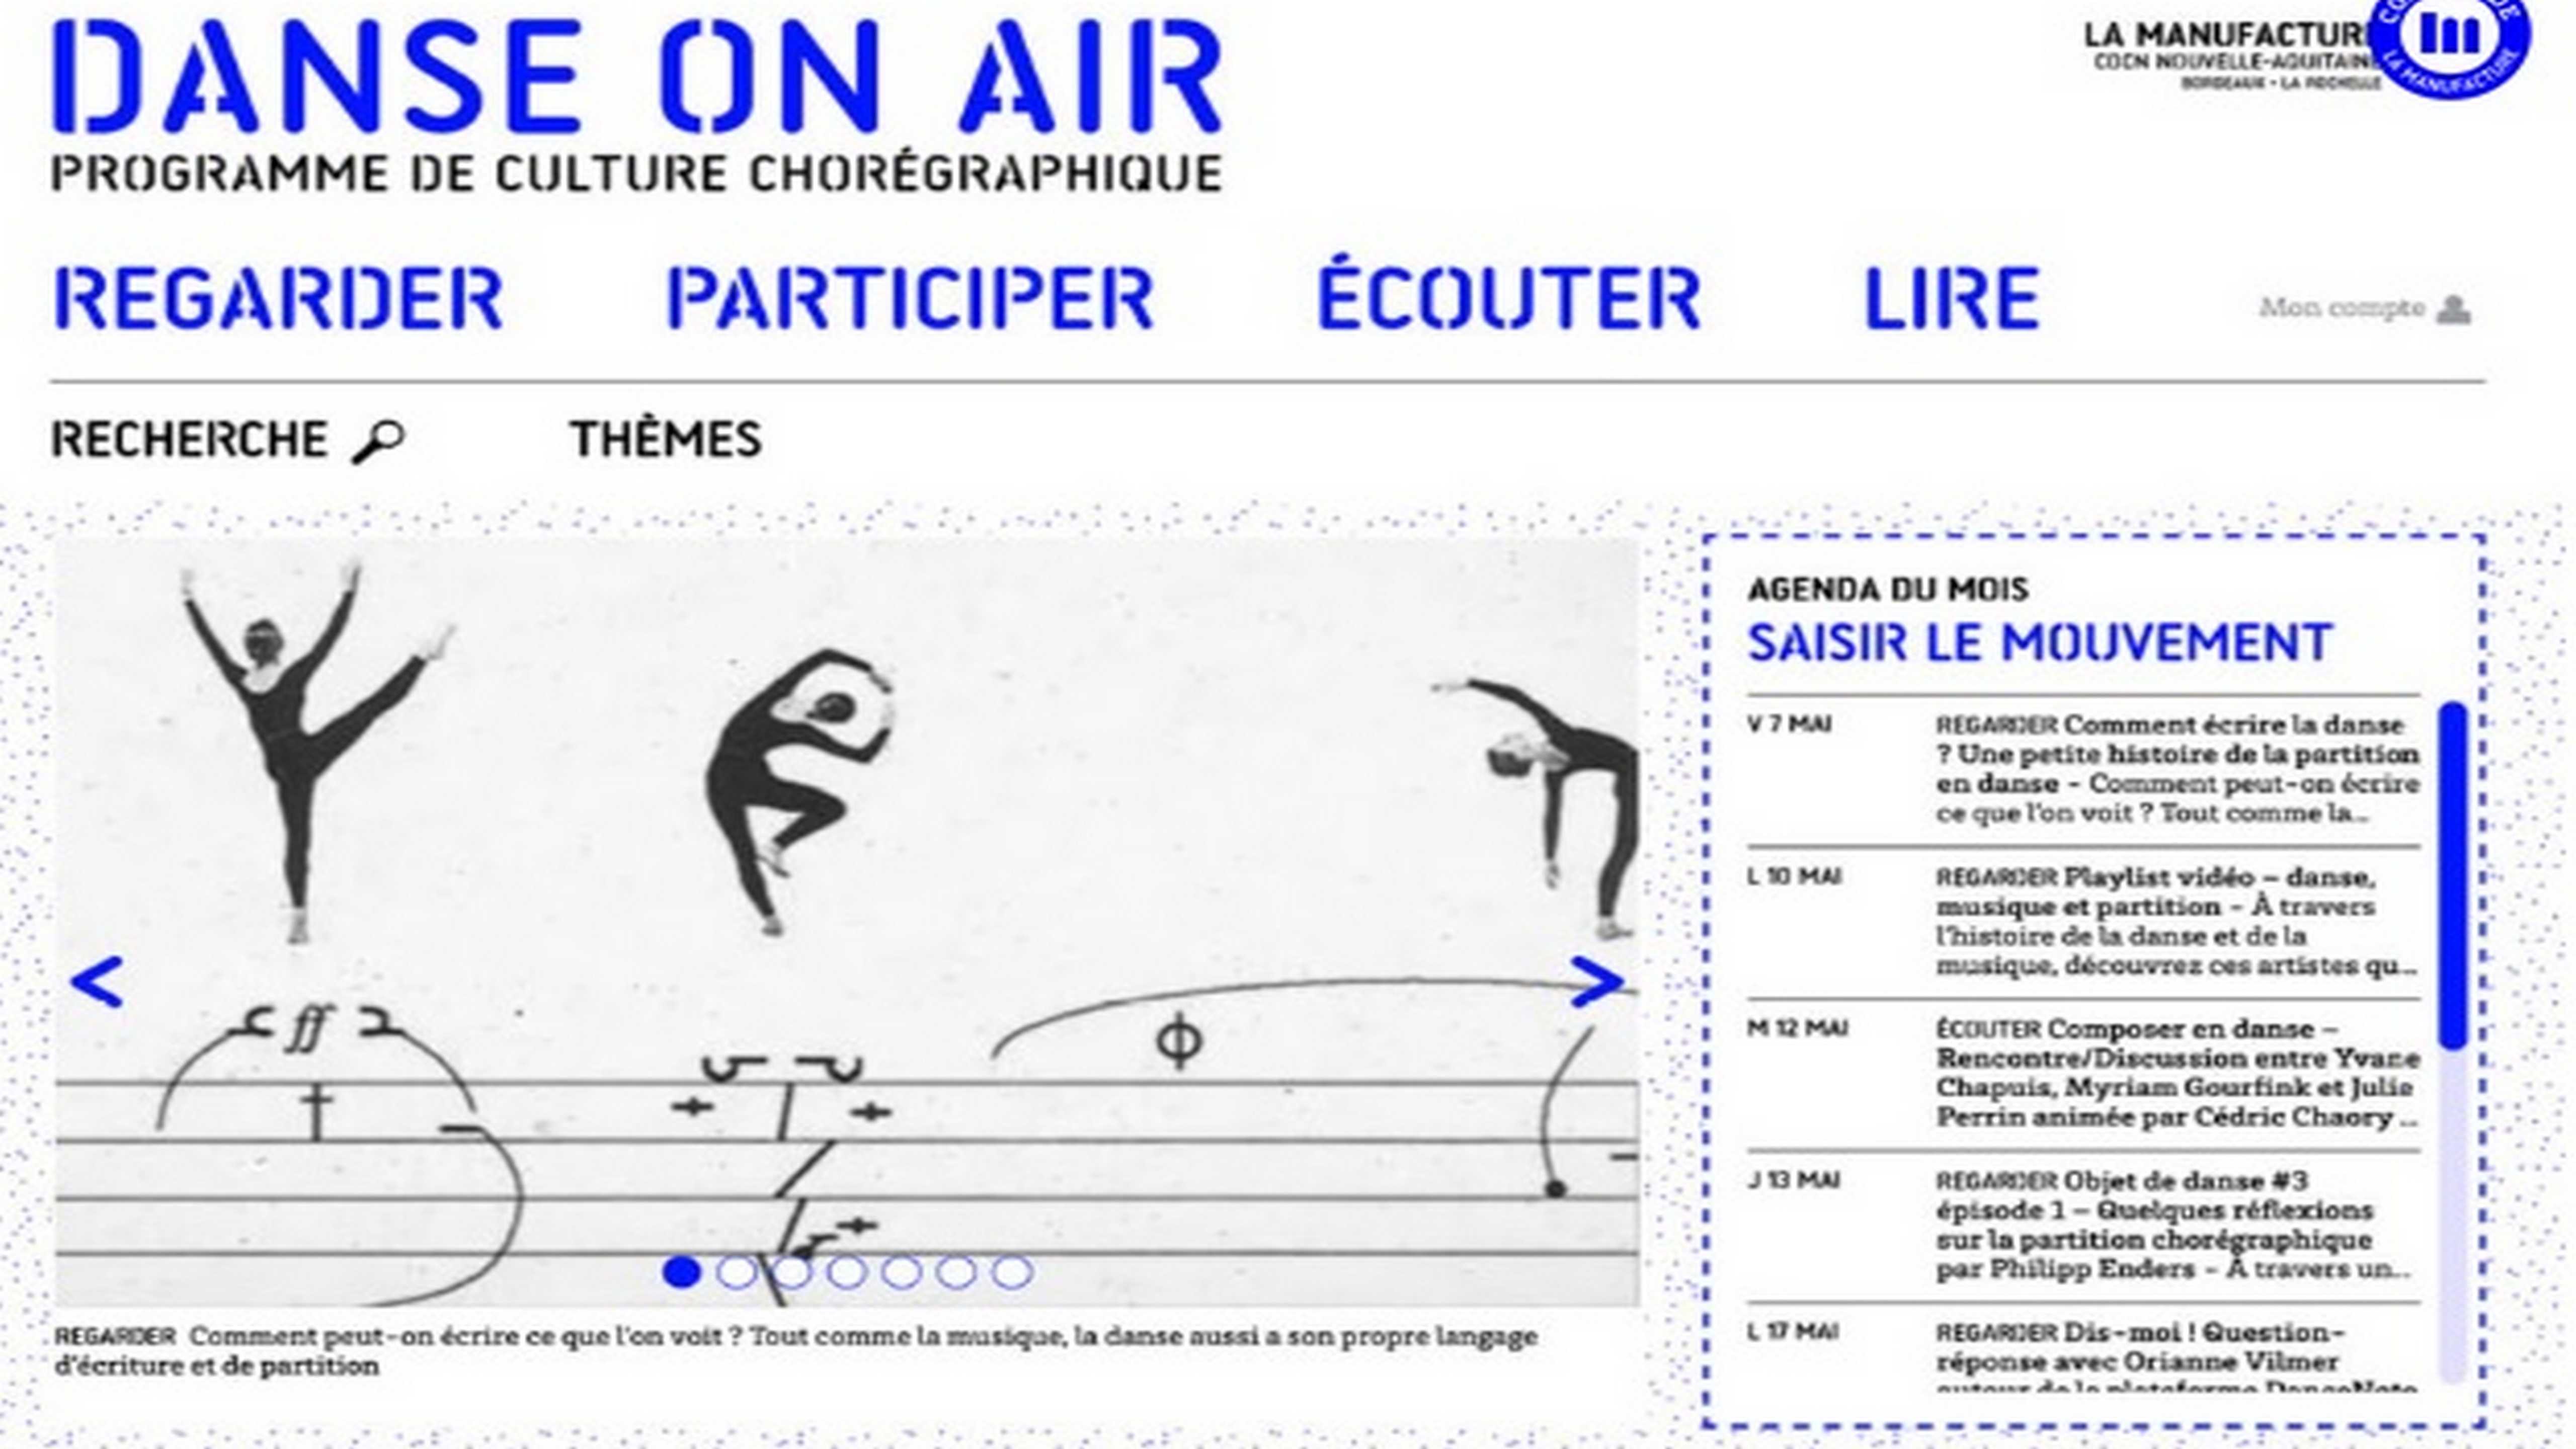 "Danse on air", le programme de culture chorégraphique en ligne de la Manuf'